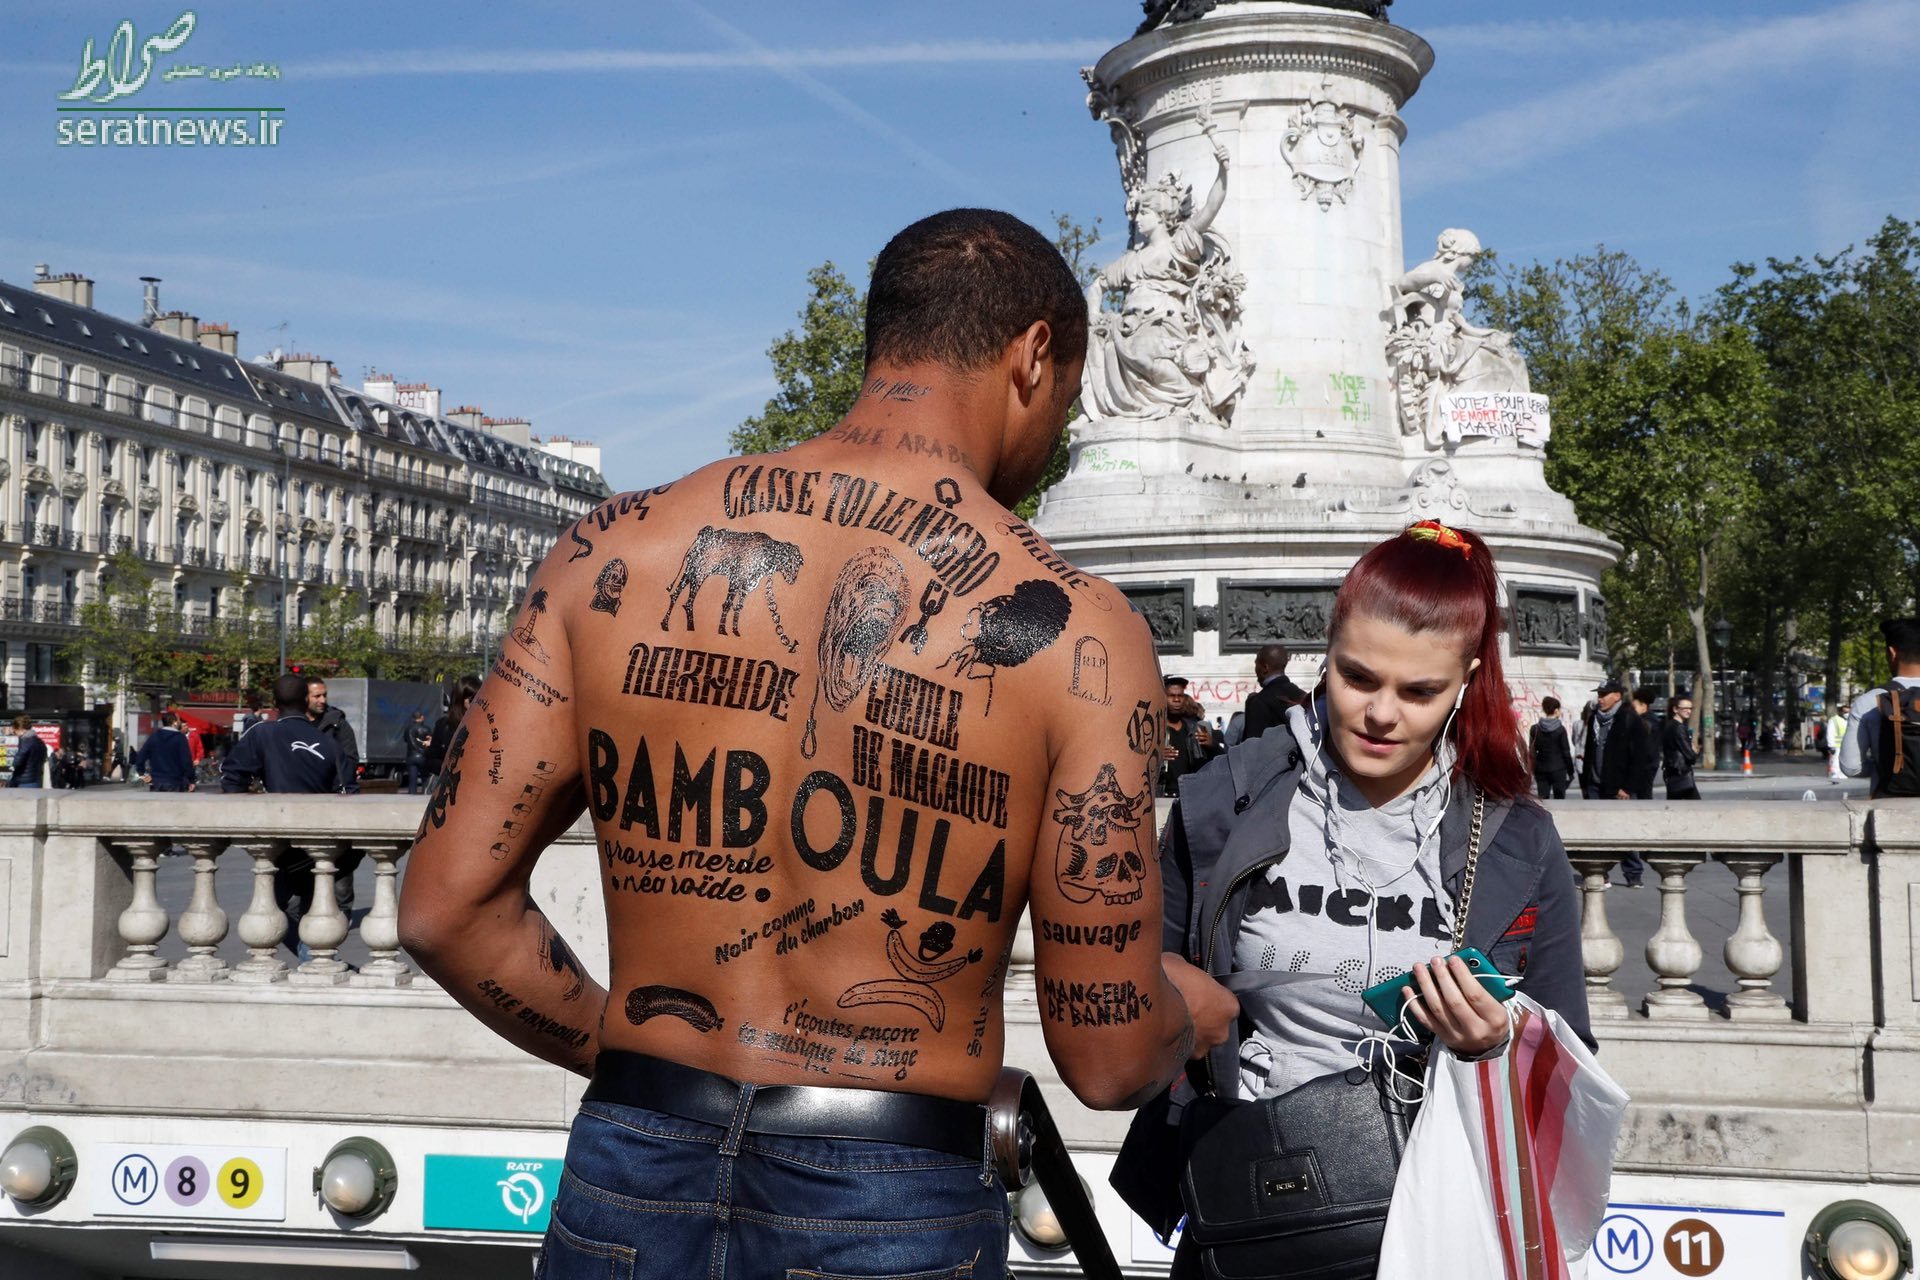 مردی در پاریس فرانسه که در اعتراض به نژادپرستی توهین های نژادپرستانه بر روی بدن خود نوشته است